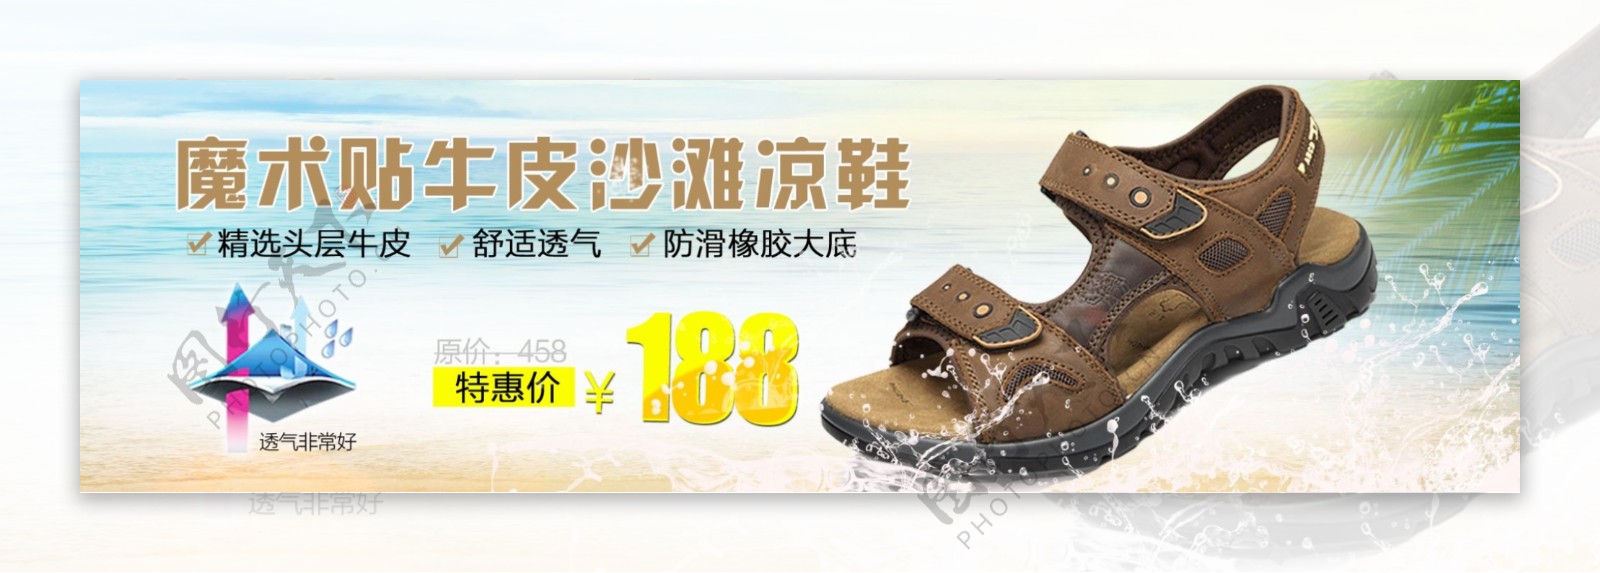 沙滩凉鞋海报图片